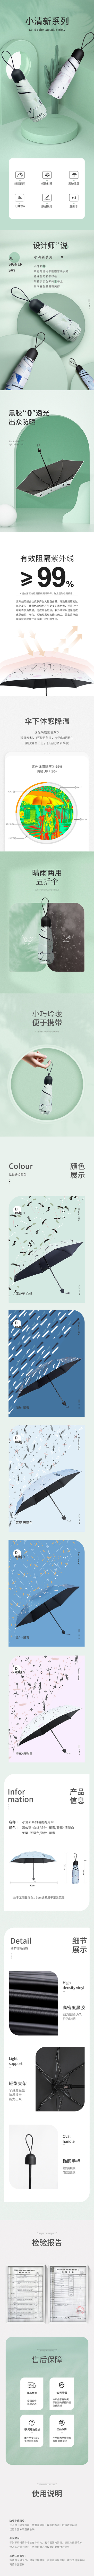 雨伞雨具详情页